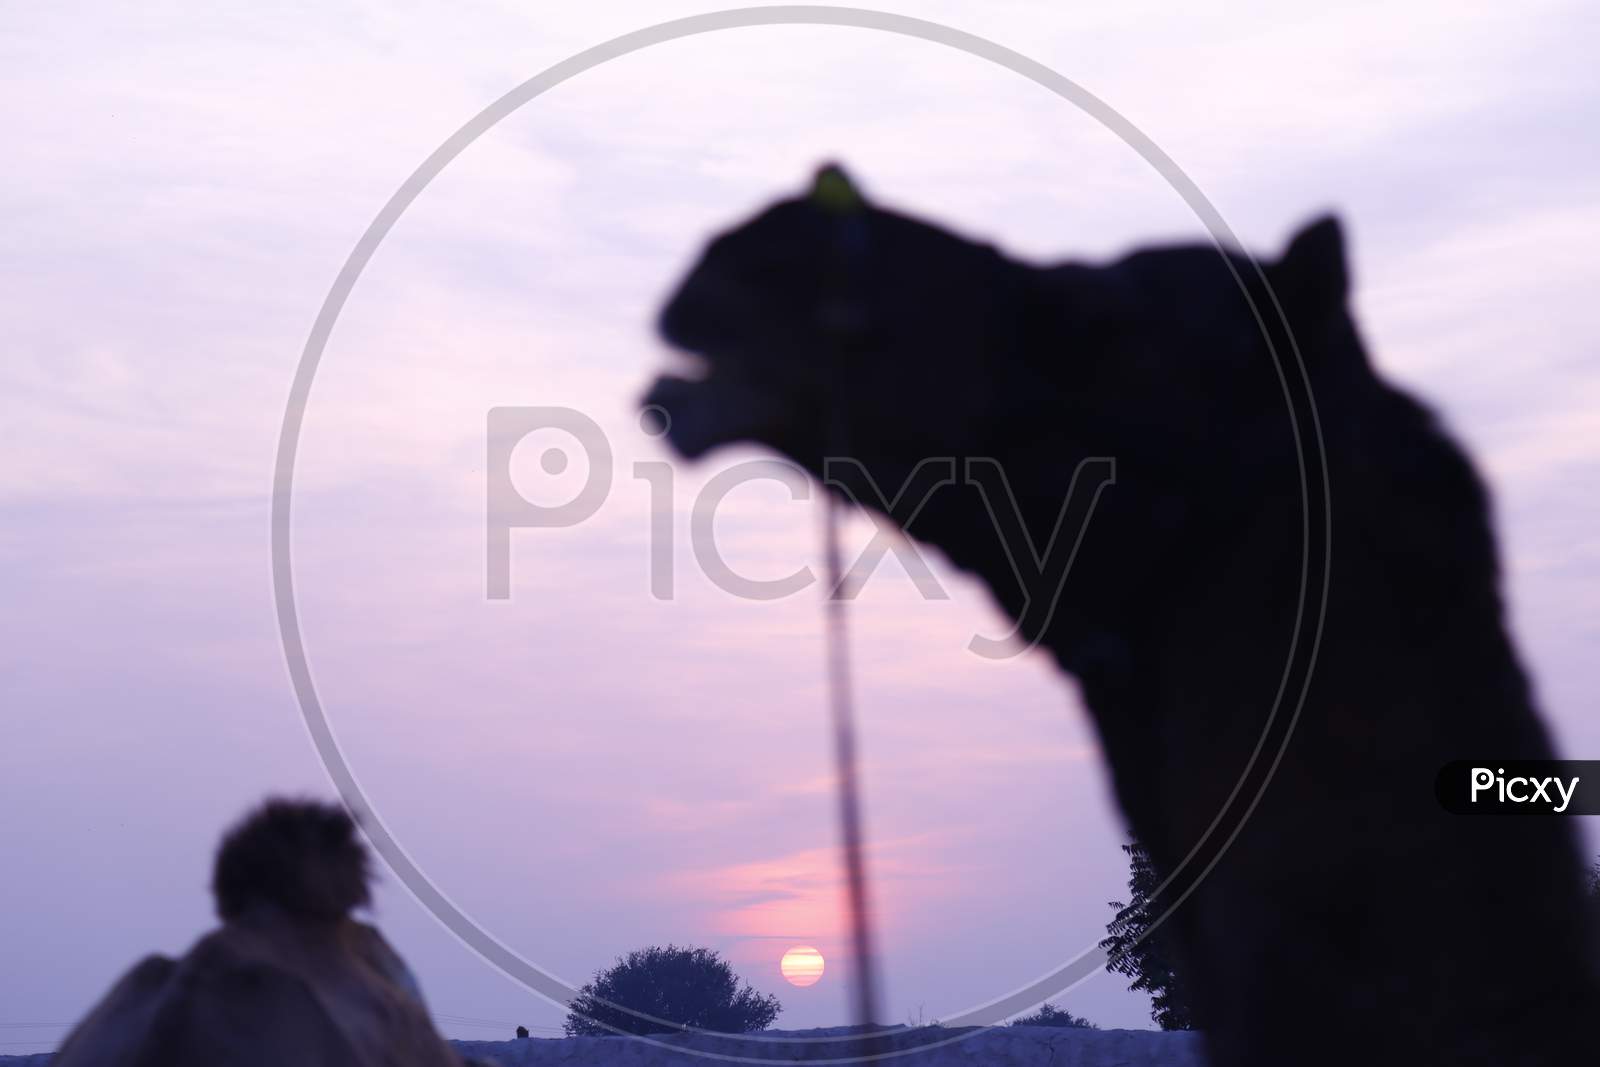 Silhouette Of Camels Over Sunset Sky in Nagaur  Cattle Fair, Nagaur